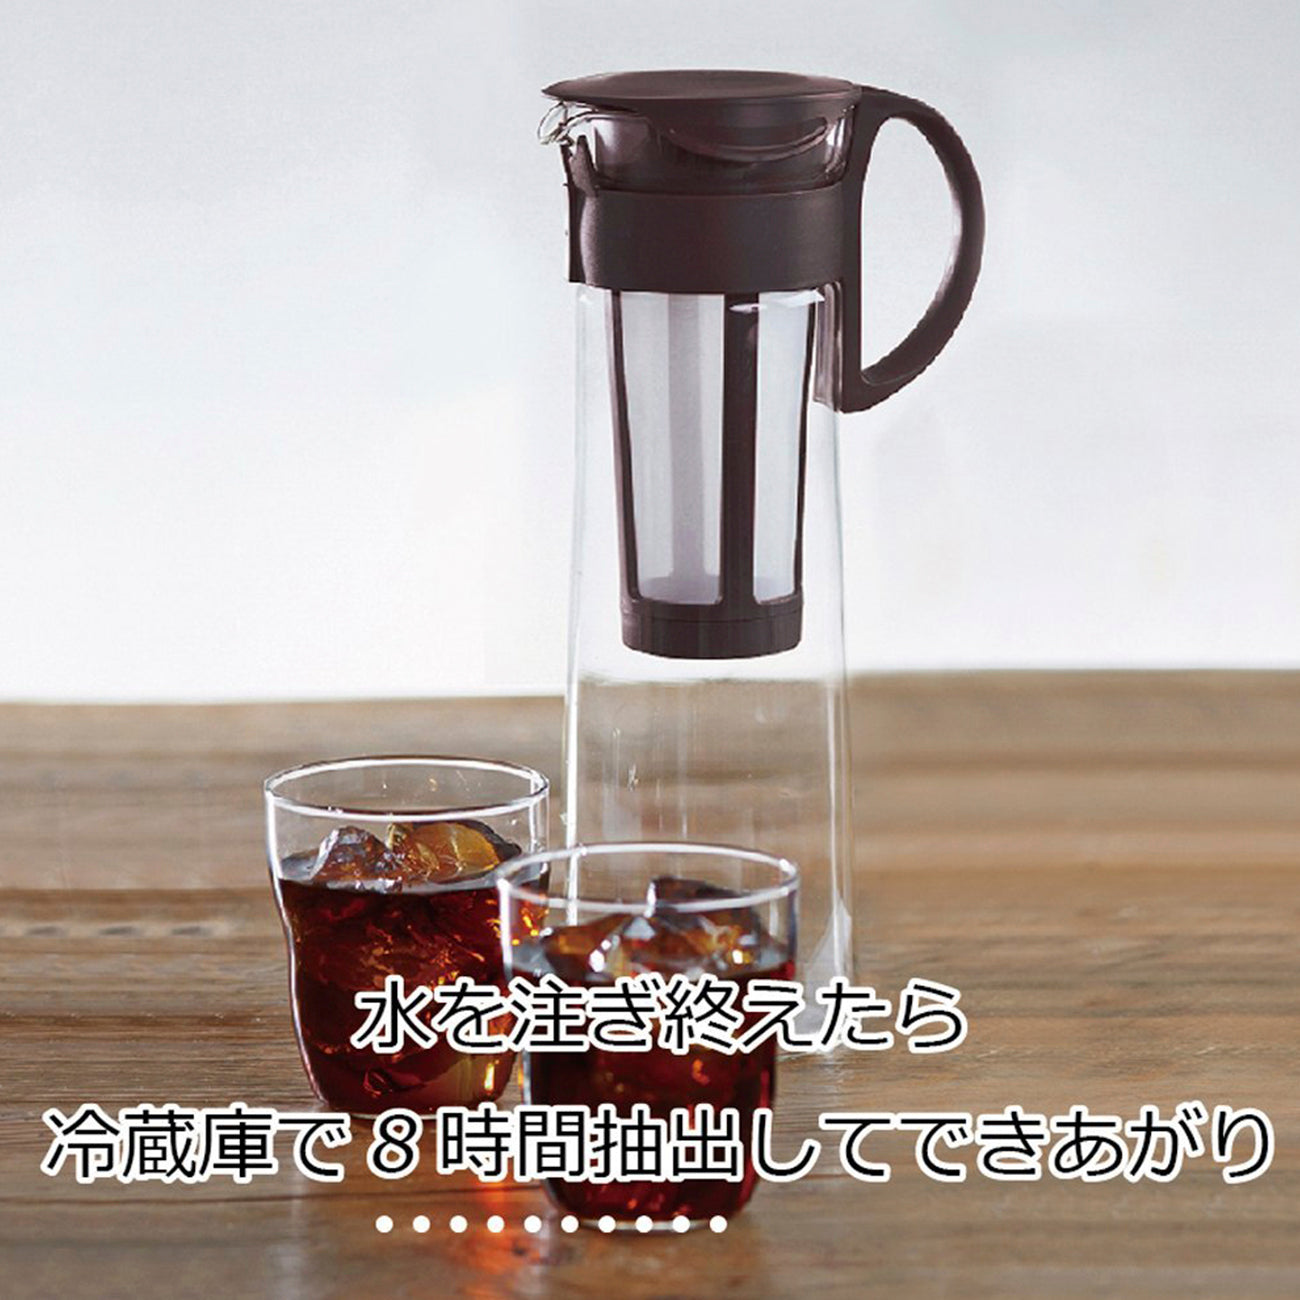 HARIO Mizudashi Cold Brew Coffee Pot 1000ml, Red – Eden Restaurant